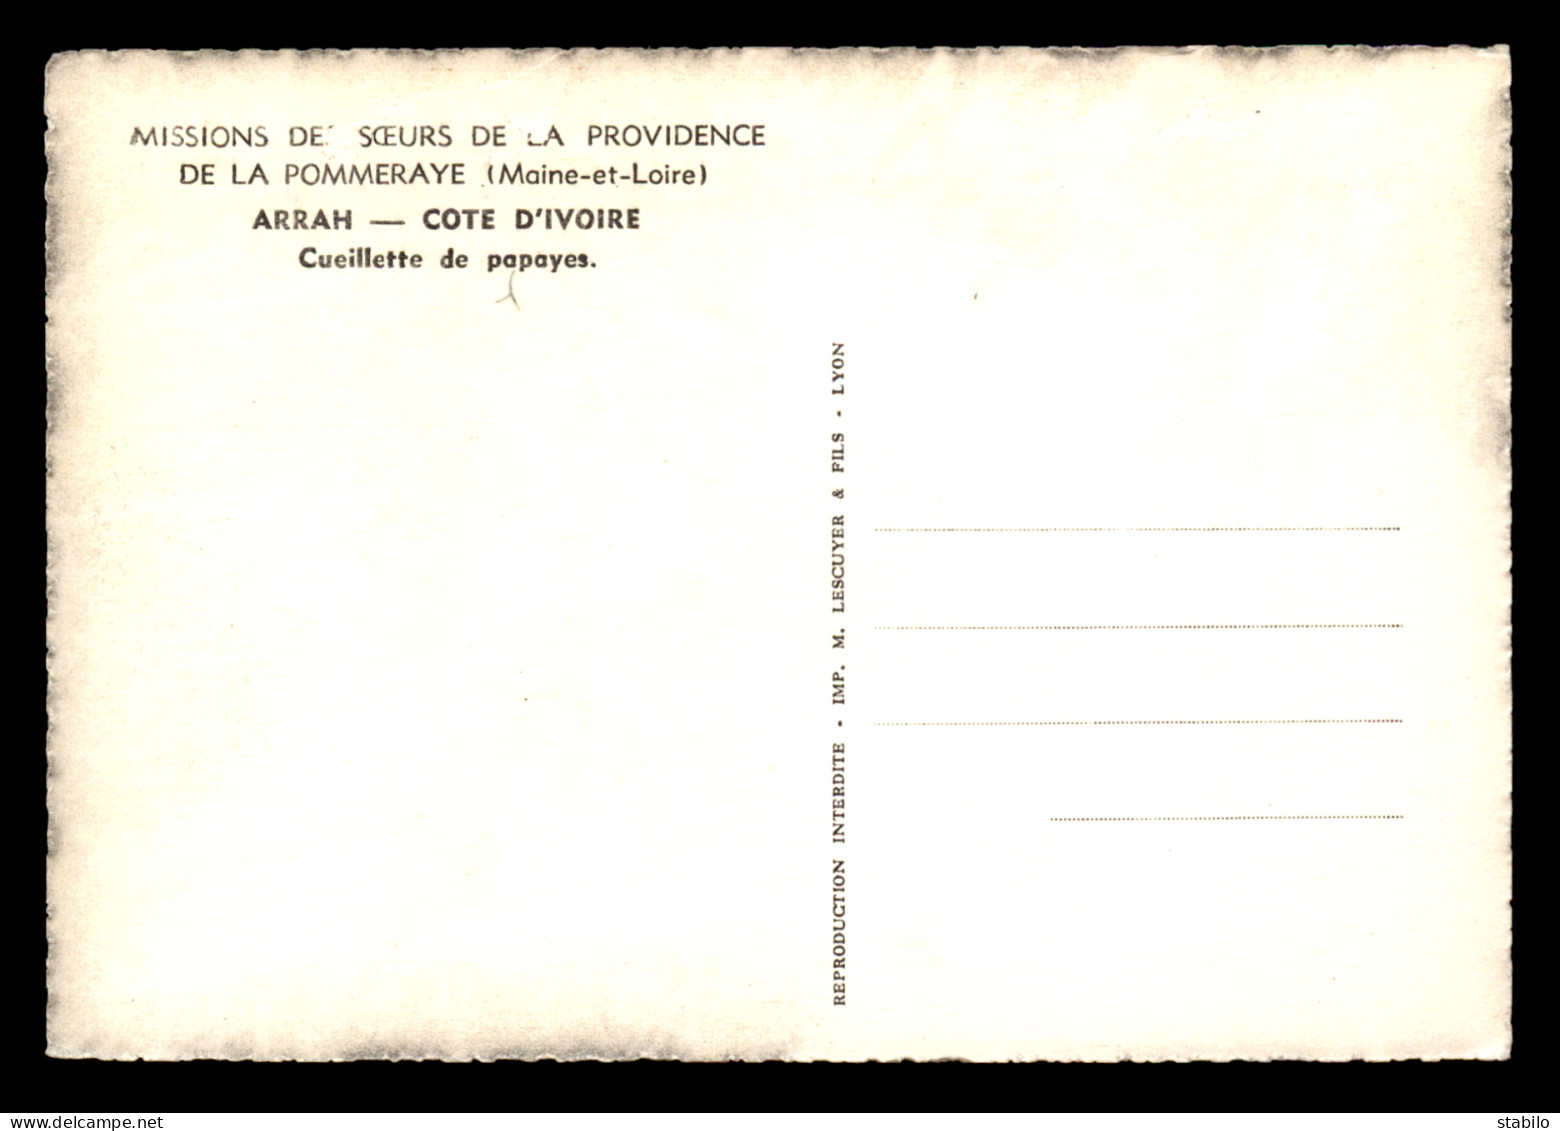 MISSIONS - SOEURS DE LA PROVIDENCE DE LA POMMERAYE (MAINE-ET-LOIRE) - COTE D'IVOIRE - ARRAH - CUEILLETTE DE PAPAYES - Missionen